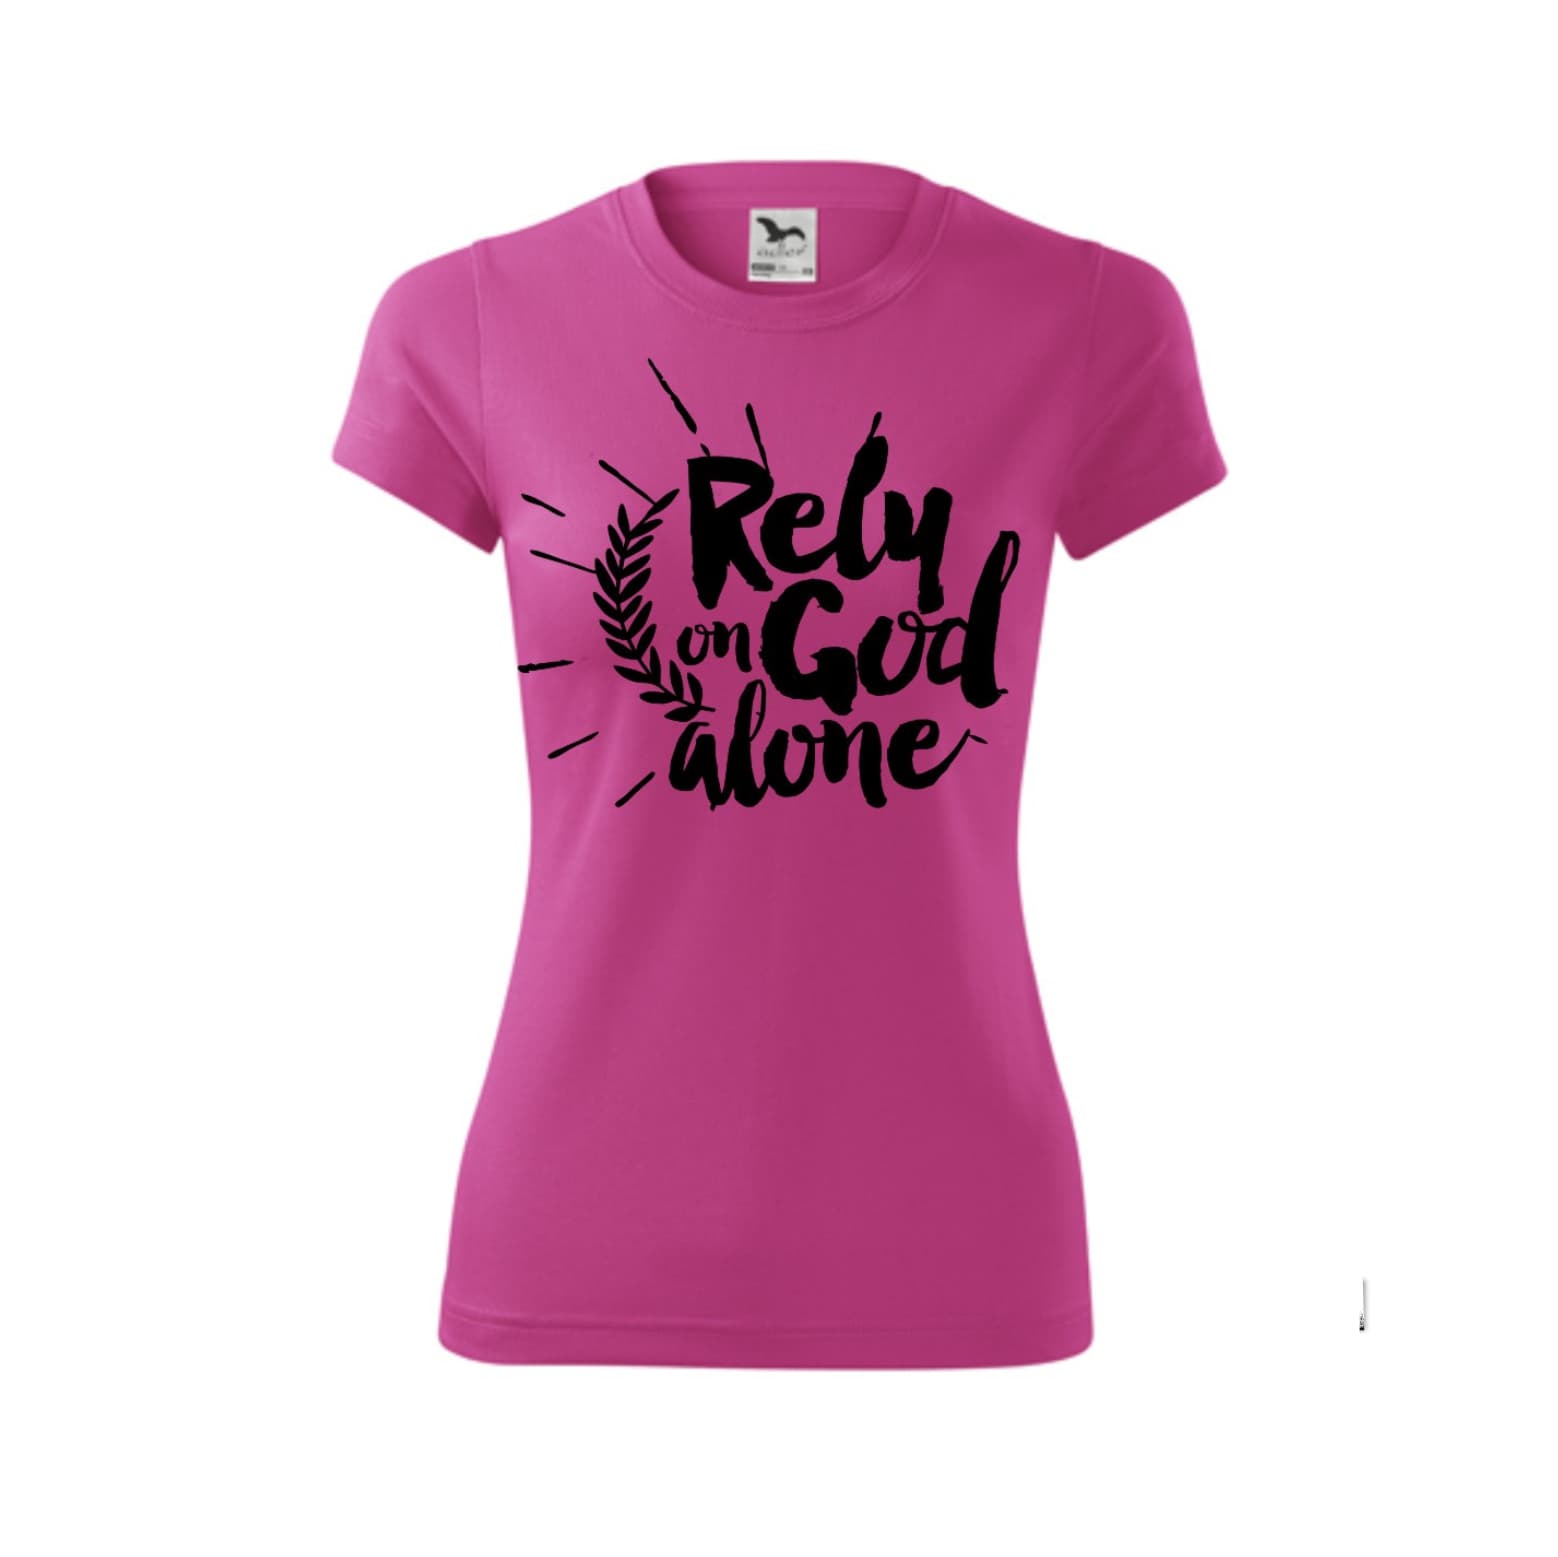 Dámske kresťanské tričko - Rely on God alone - Ružové